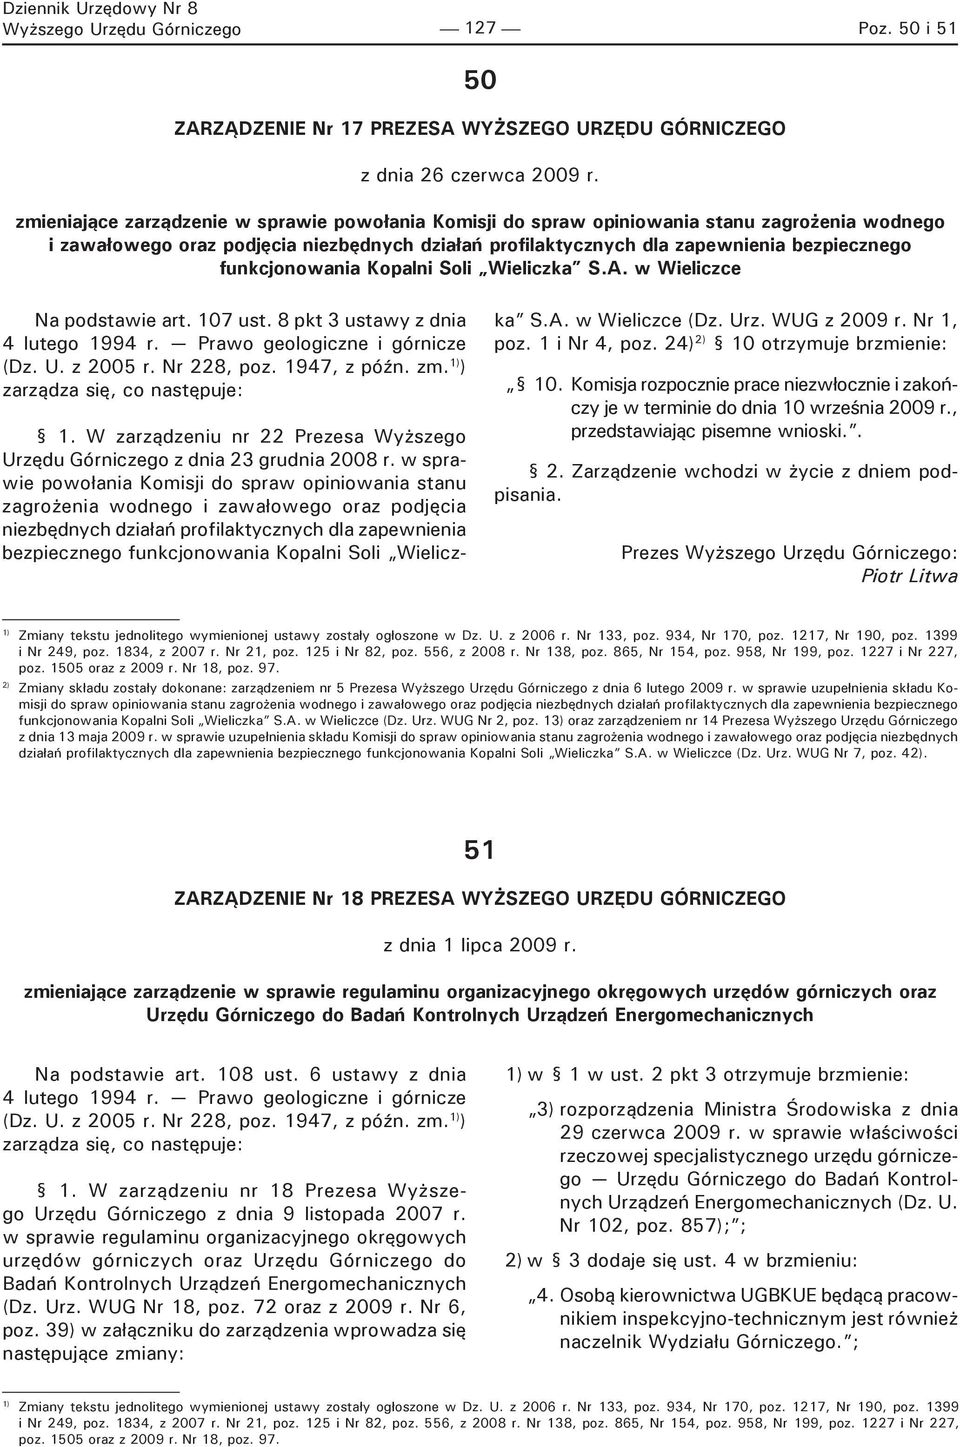 funkcjonowania Kopalni Soli Wieliczka S.A. w Wieliczce Na podstawie art. 107 ust. 8 pkt 3 ustawy z dnia 4 lutego 1994 r. Prawo geologiczne i górnicze (Dz. U. z 2005 r. Nr 228, poz. 1947, z późn. zm.